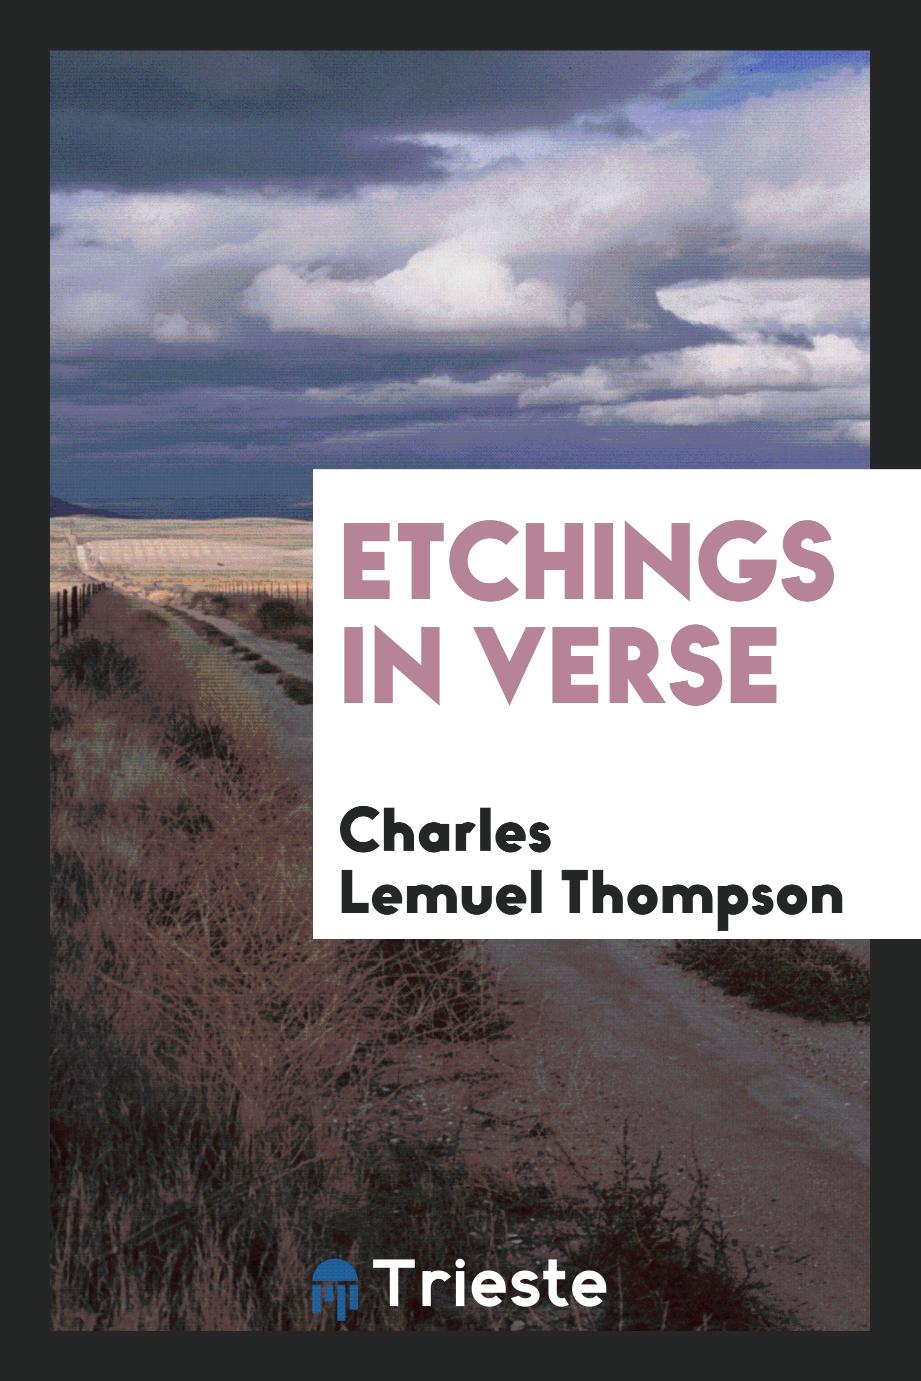 Etchings in Verse